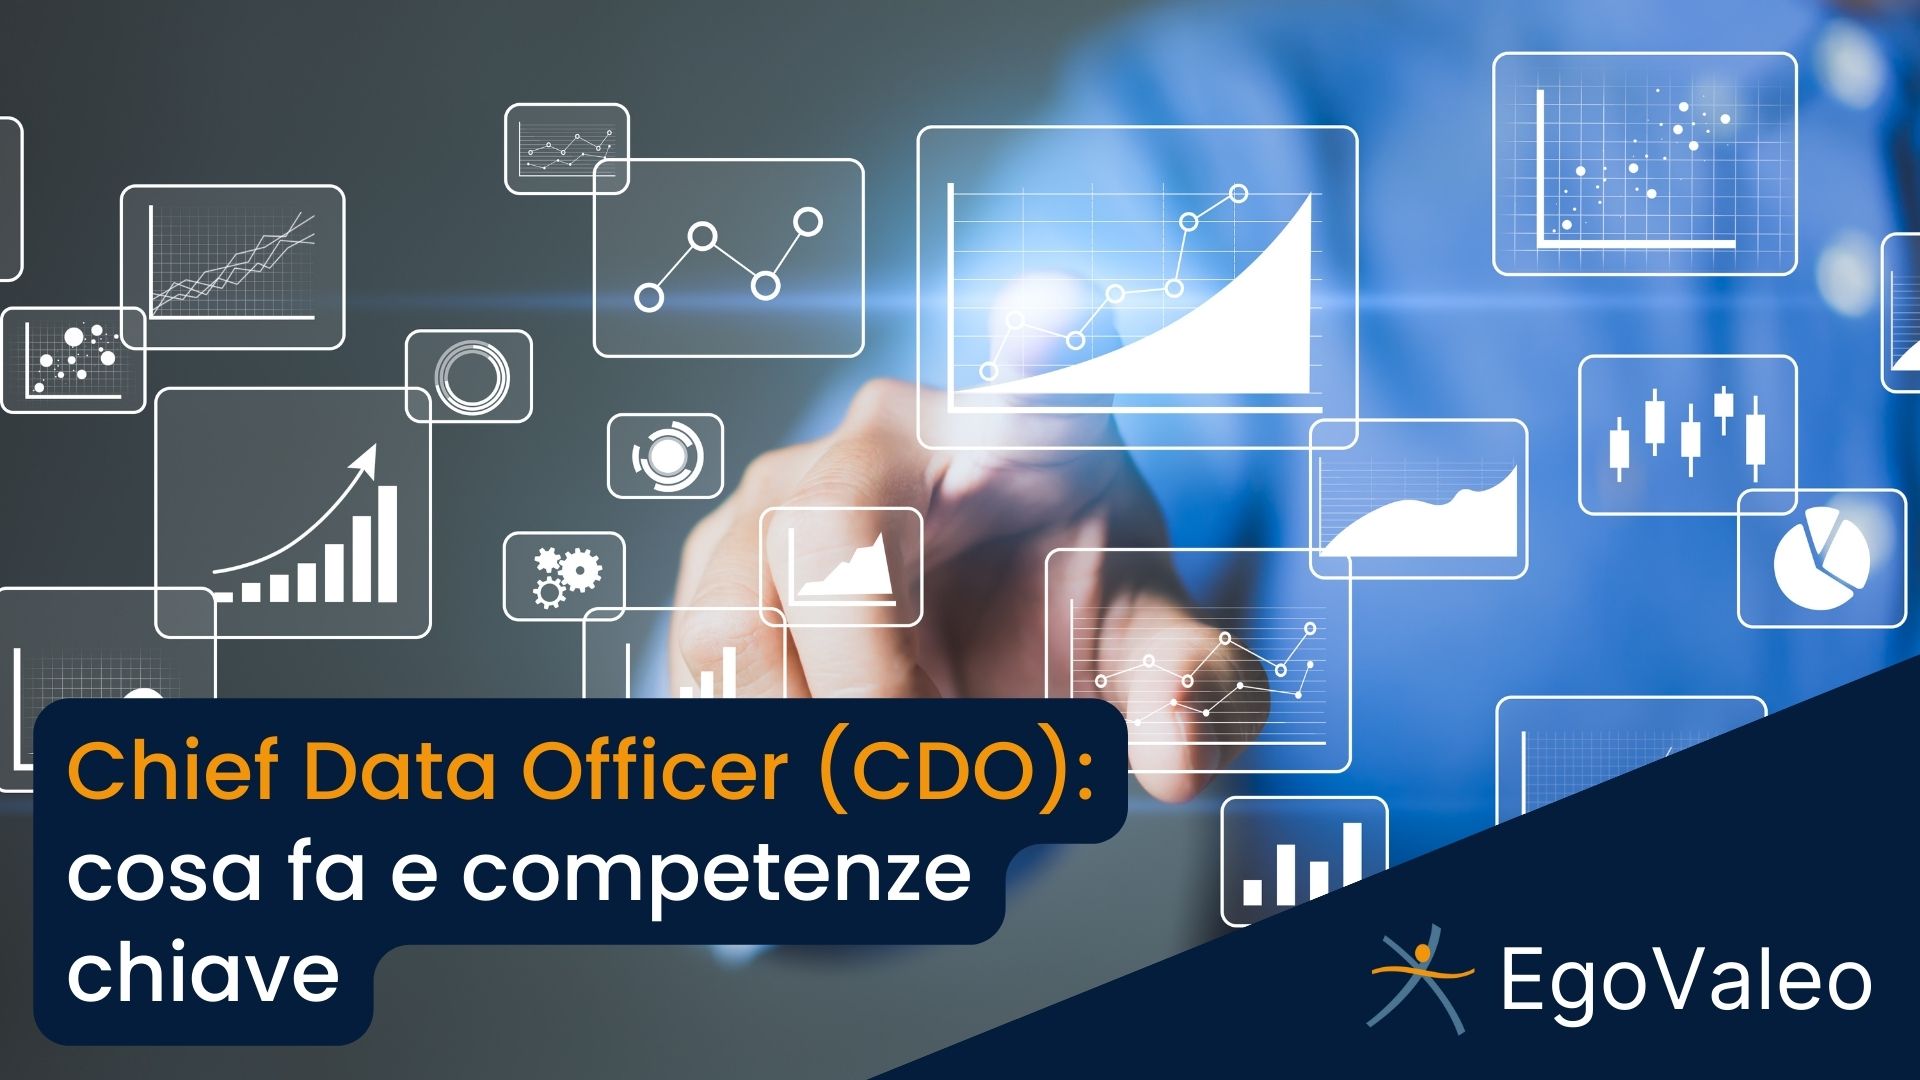 Chief Data Officer: cosa fa e competenze chiave